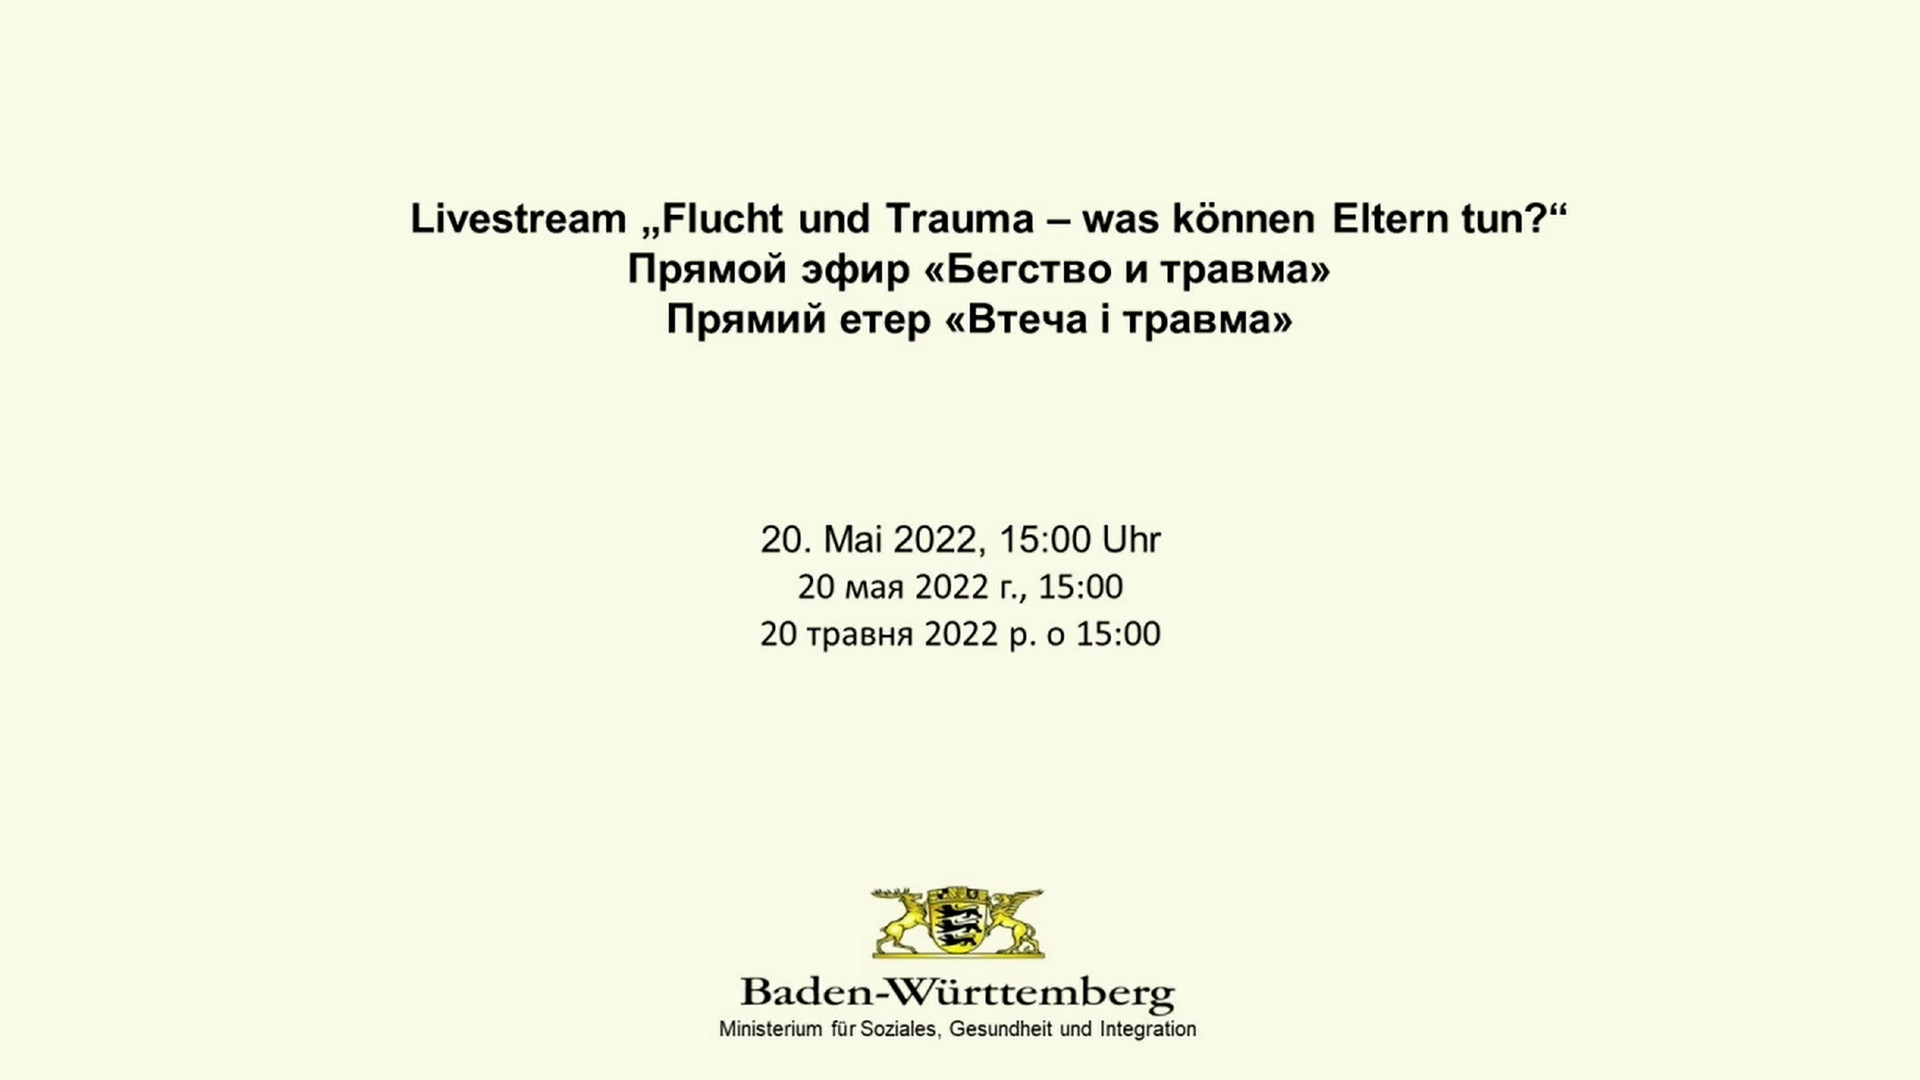 Startfolie mit Veranstaltungstitel zu Livestream „Flucht und Trauma – was können Eltern tun?“ am 20. Mai 2022